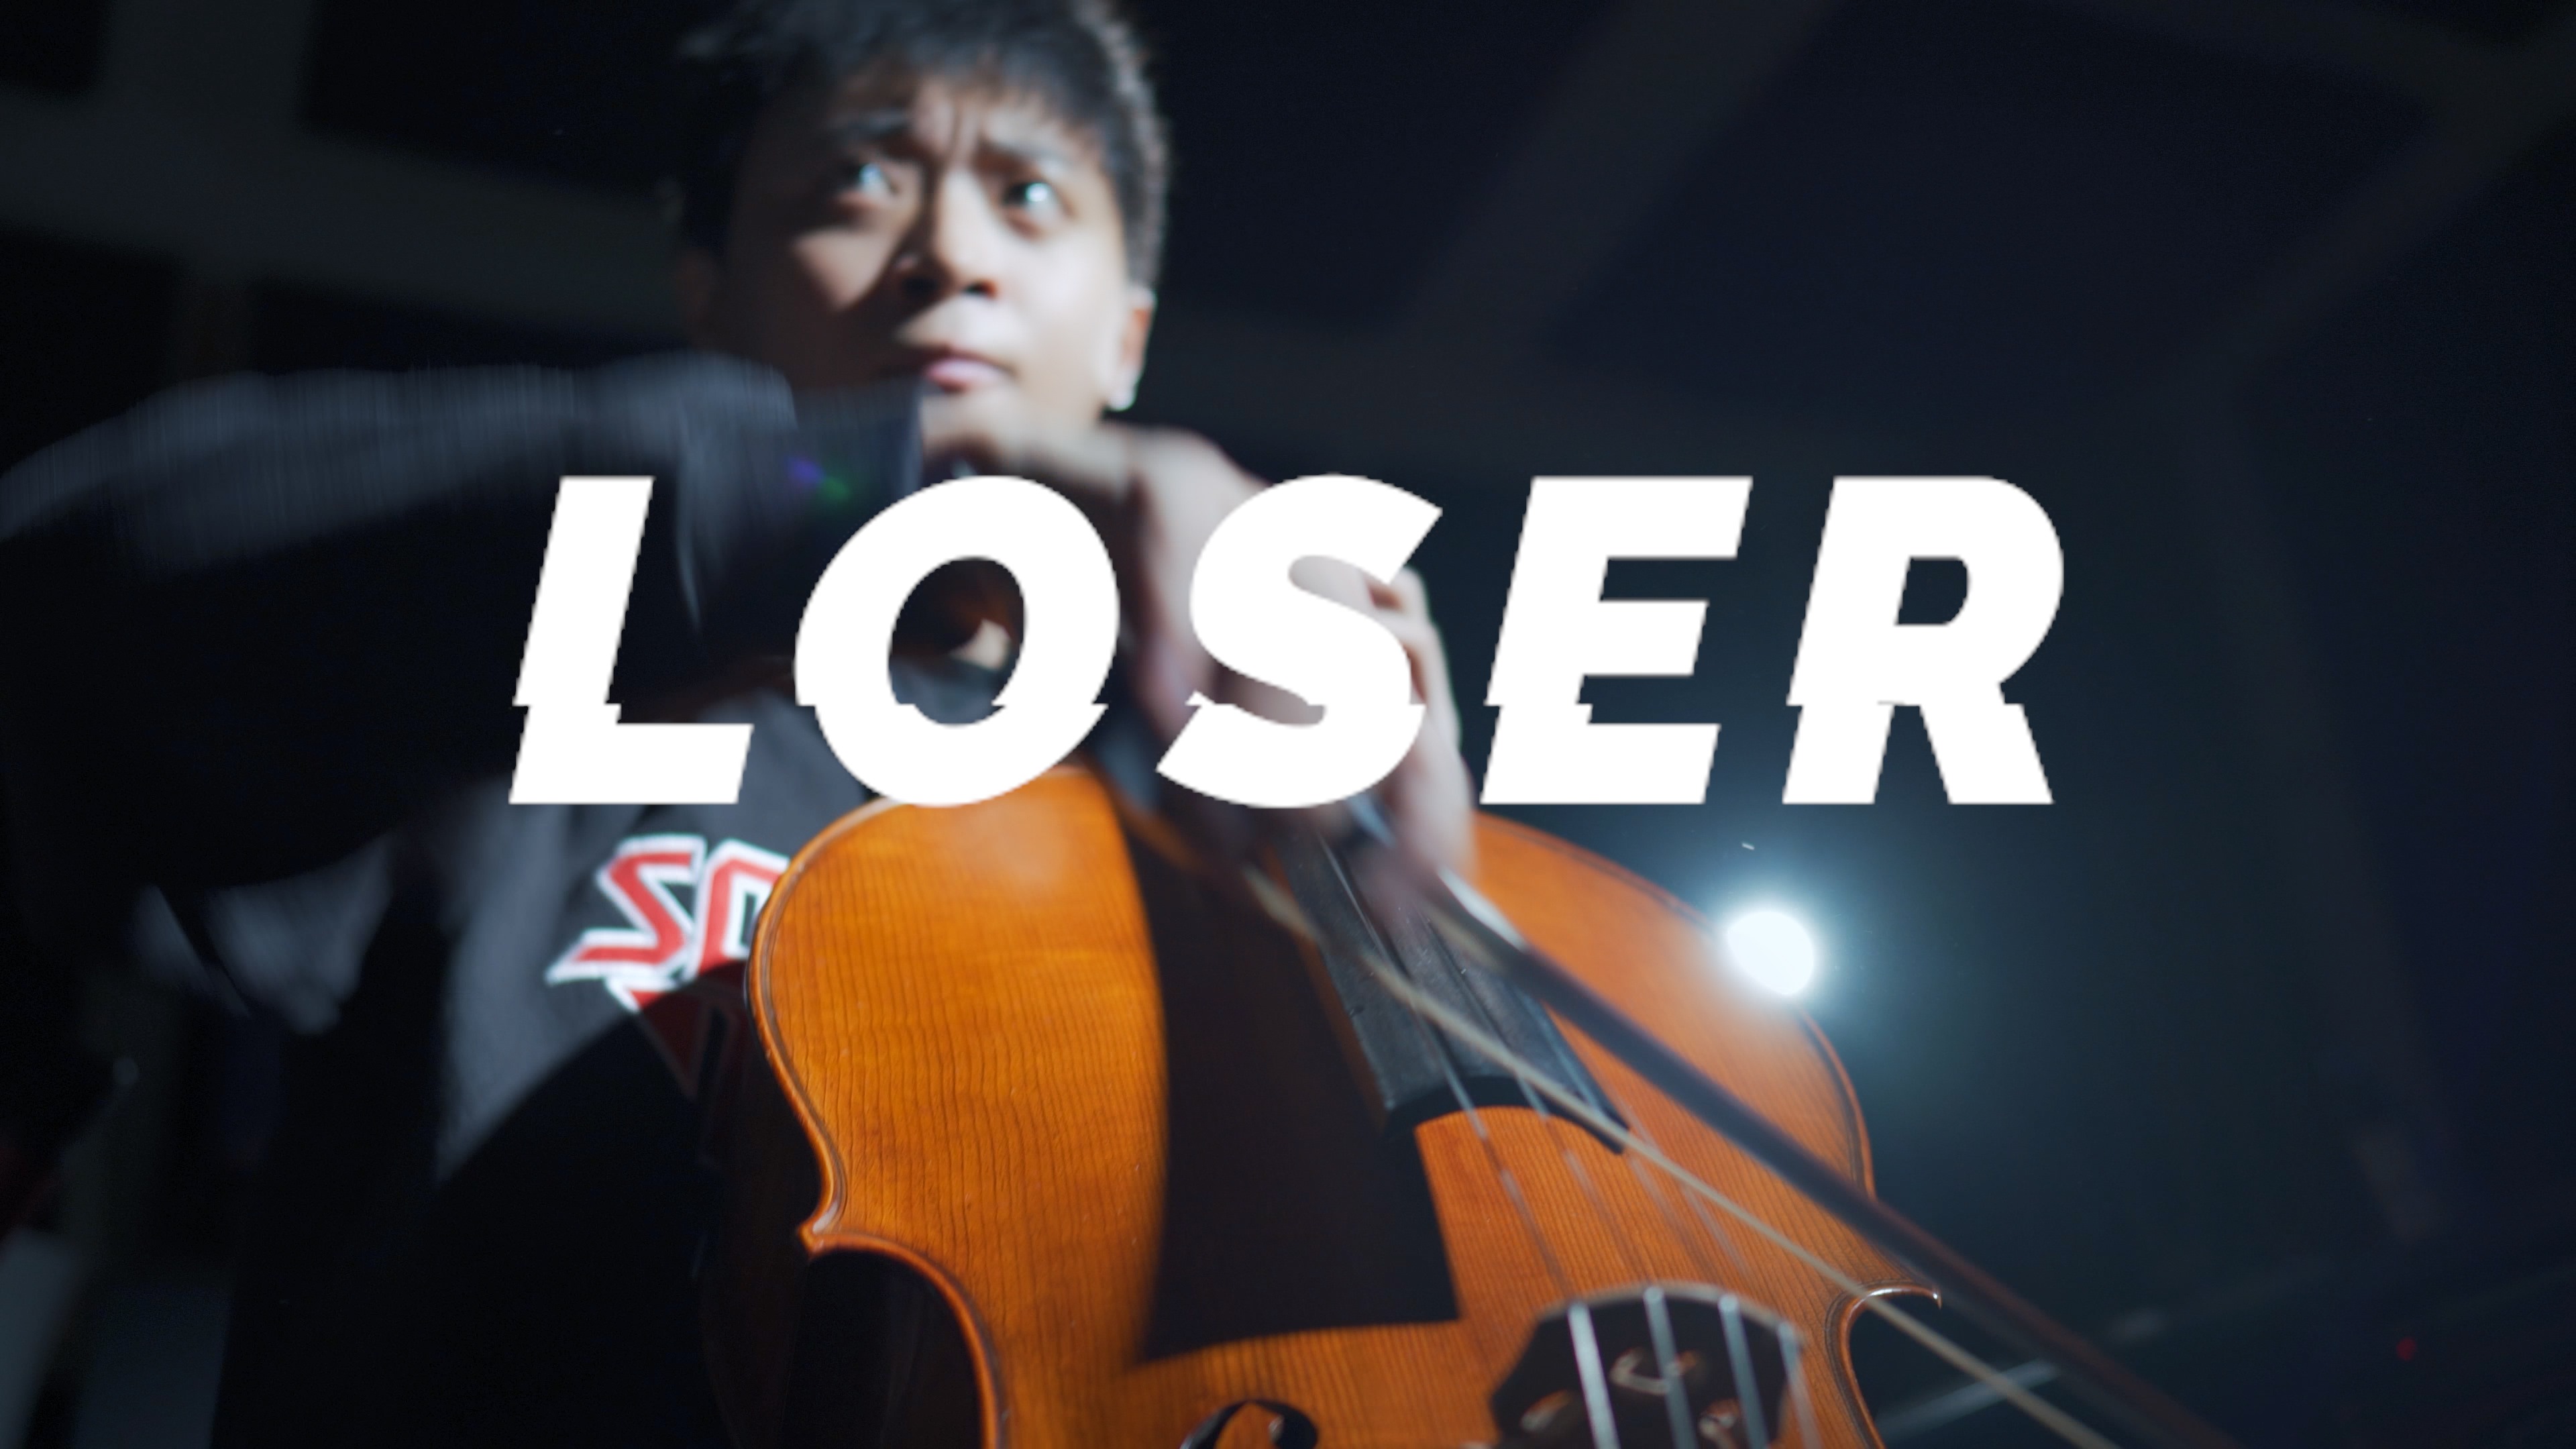 《Loser》よねづけんし米津玄師  - cello cover 大提琴演奏 『cover by YoYo Cello』